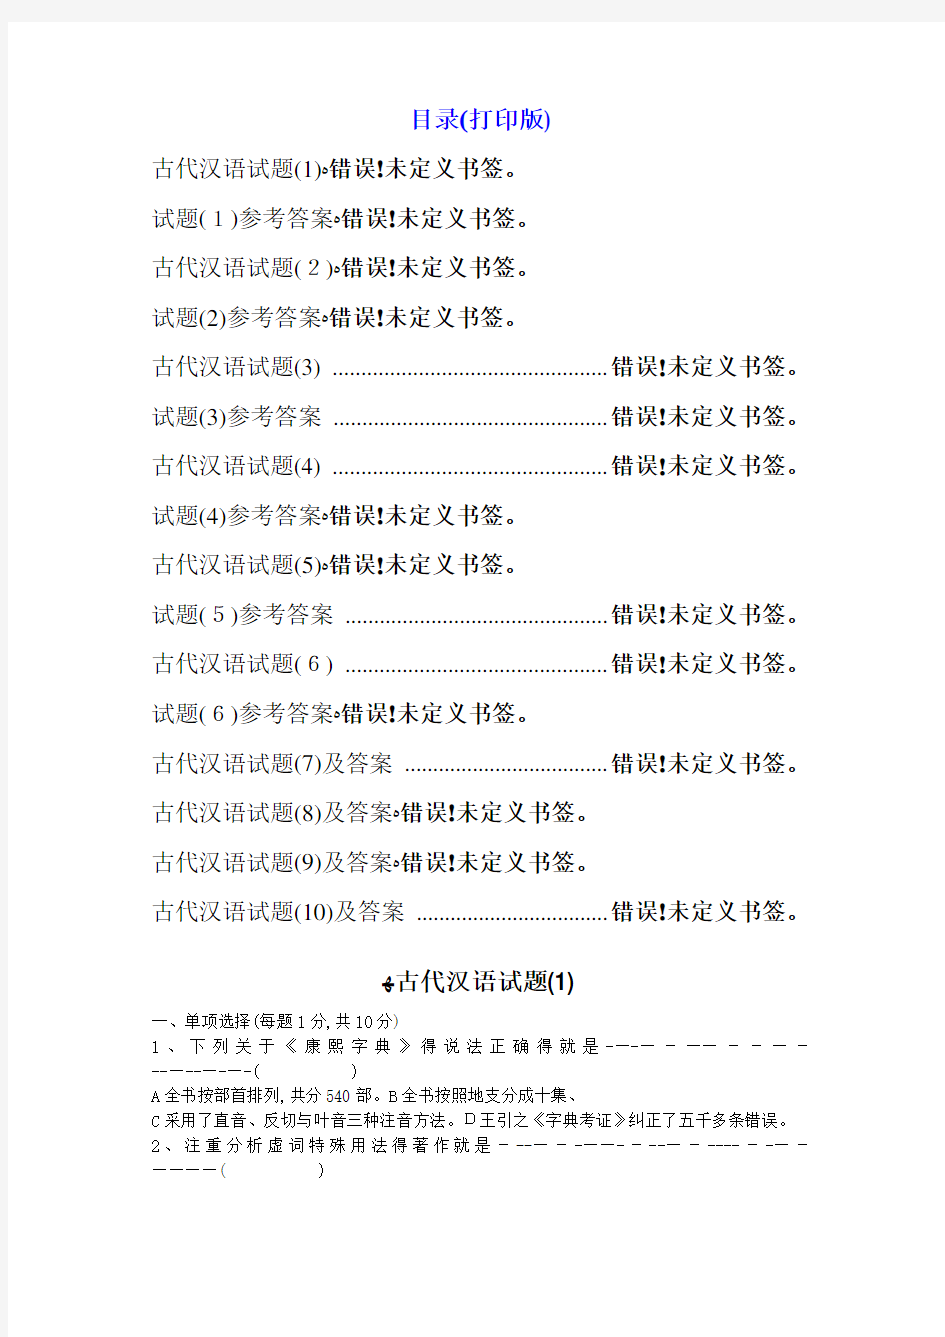 古代汉语试题10套及答案